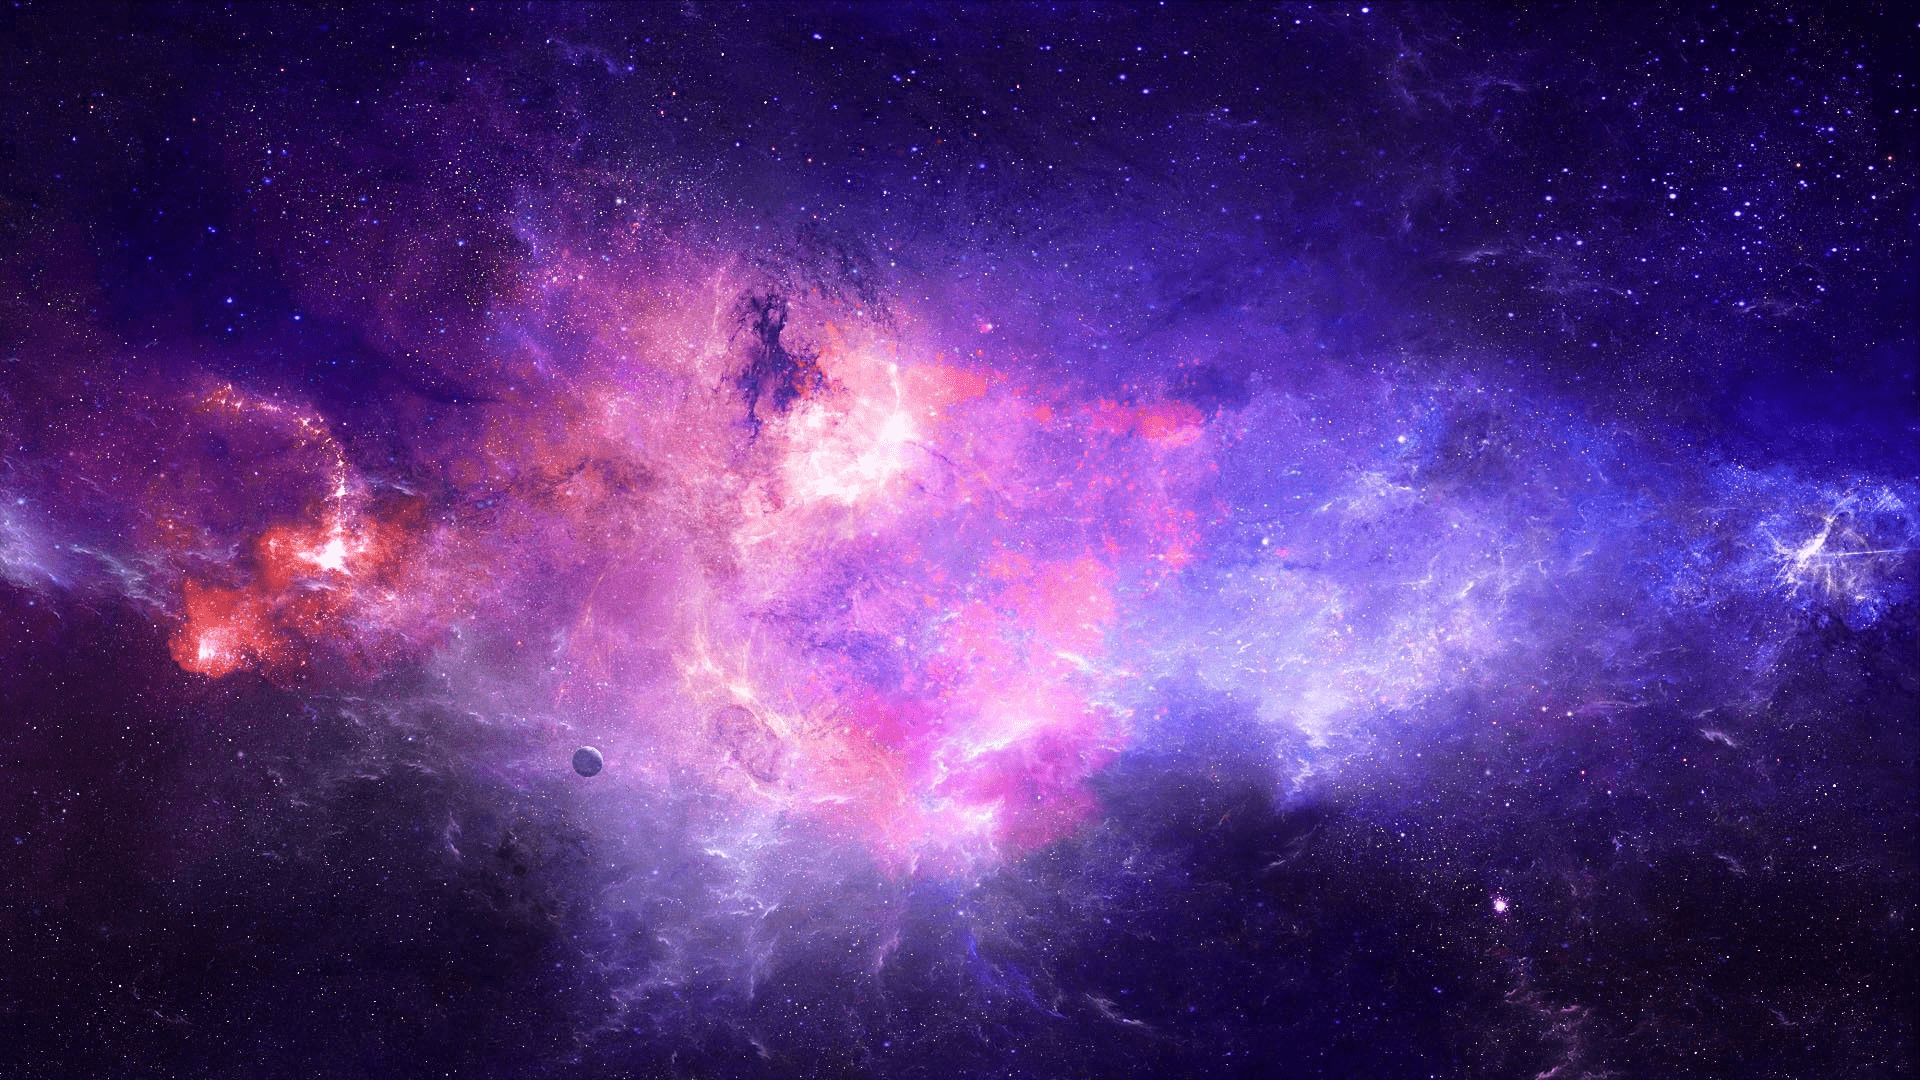 Hình nền vũ trụ đẹp như một bức tranh thực sự. Với một thiên hà tuyệt đẹp, hình nền này sẽ khiến bạn không thể rời mắt. Đây chắc chắn là một thông điệp tuyệt vời cho bạn thấy rằng vũ trụ có thể rất đẹp.